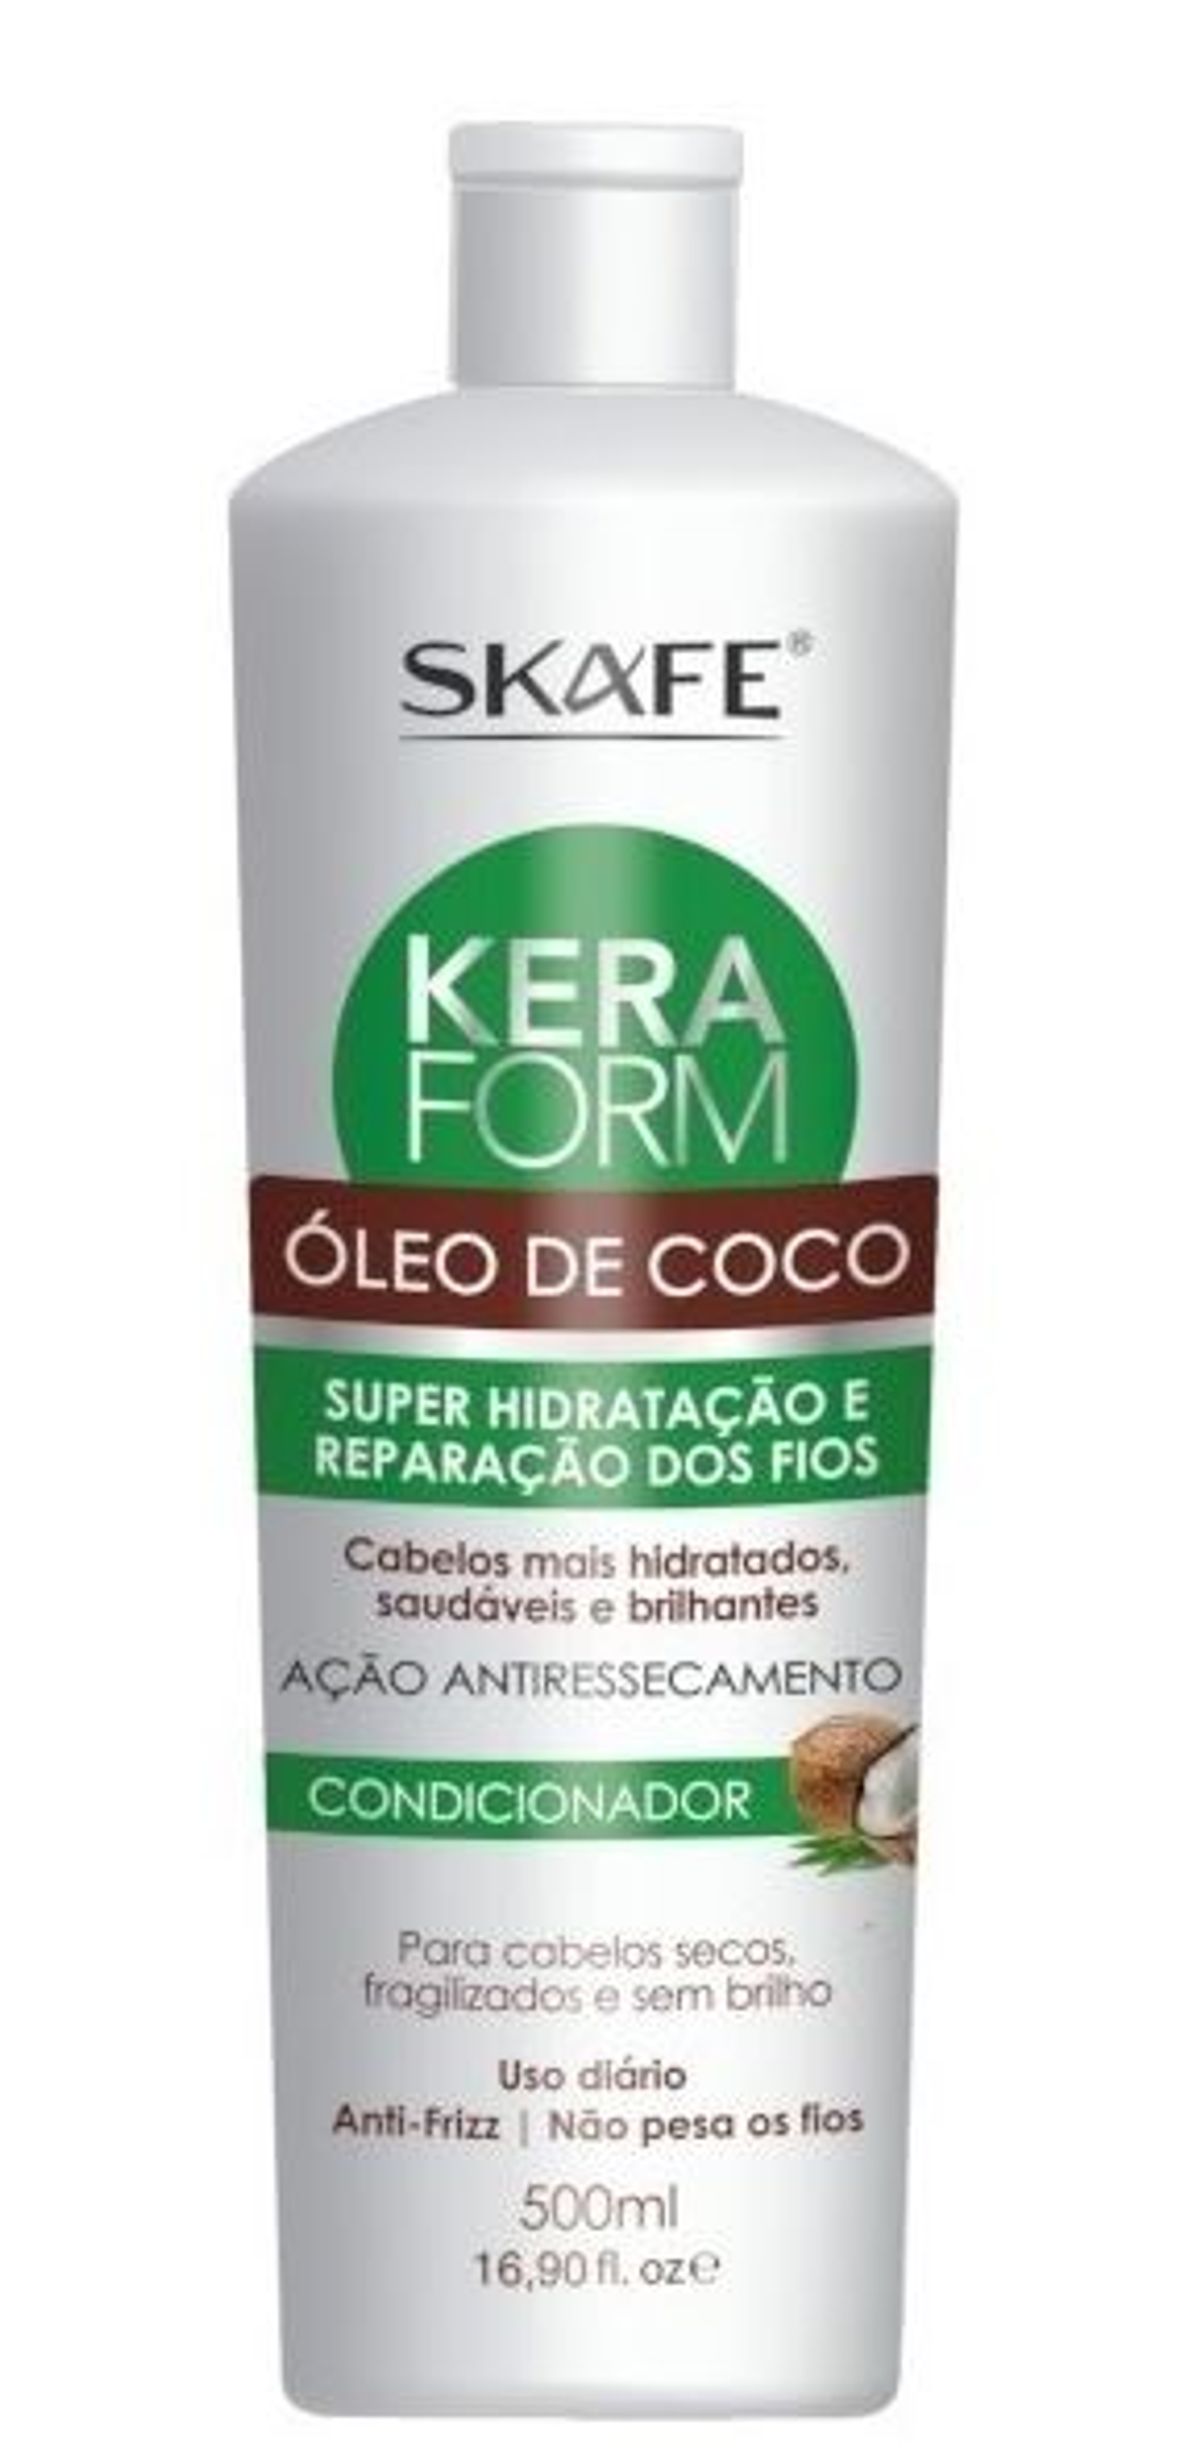 Condicionador Kera Form Óleo de Coco 500ml